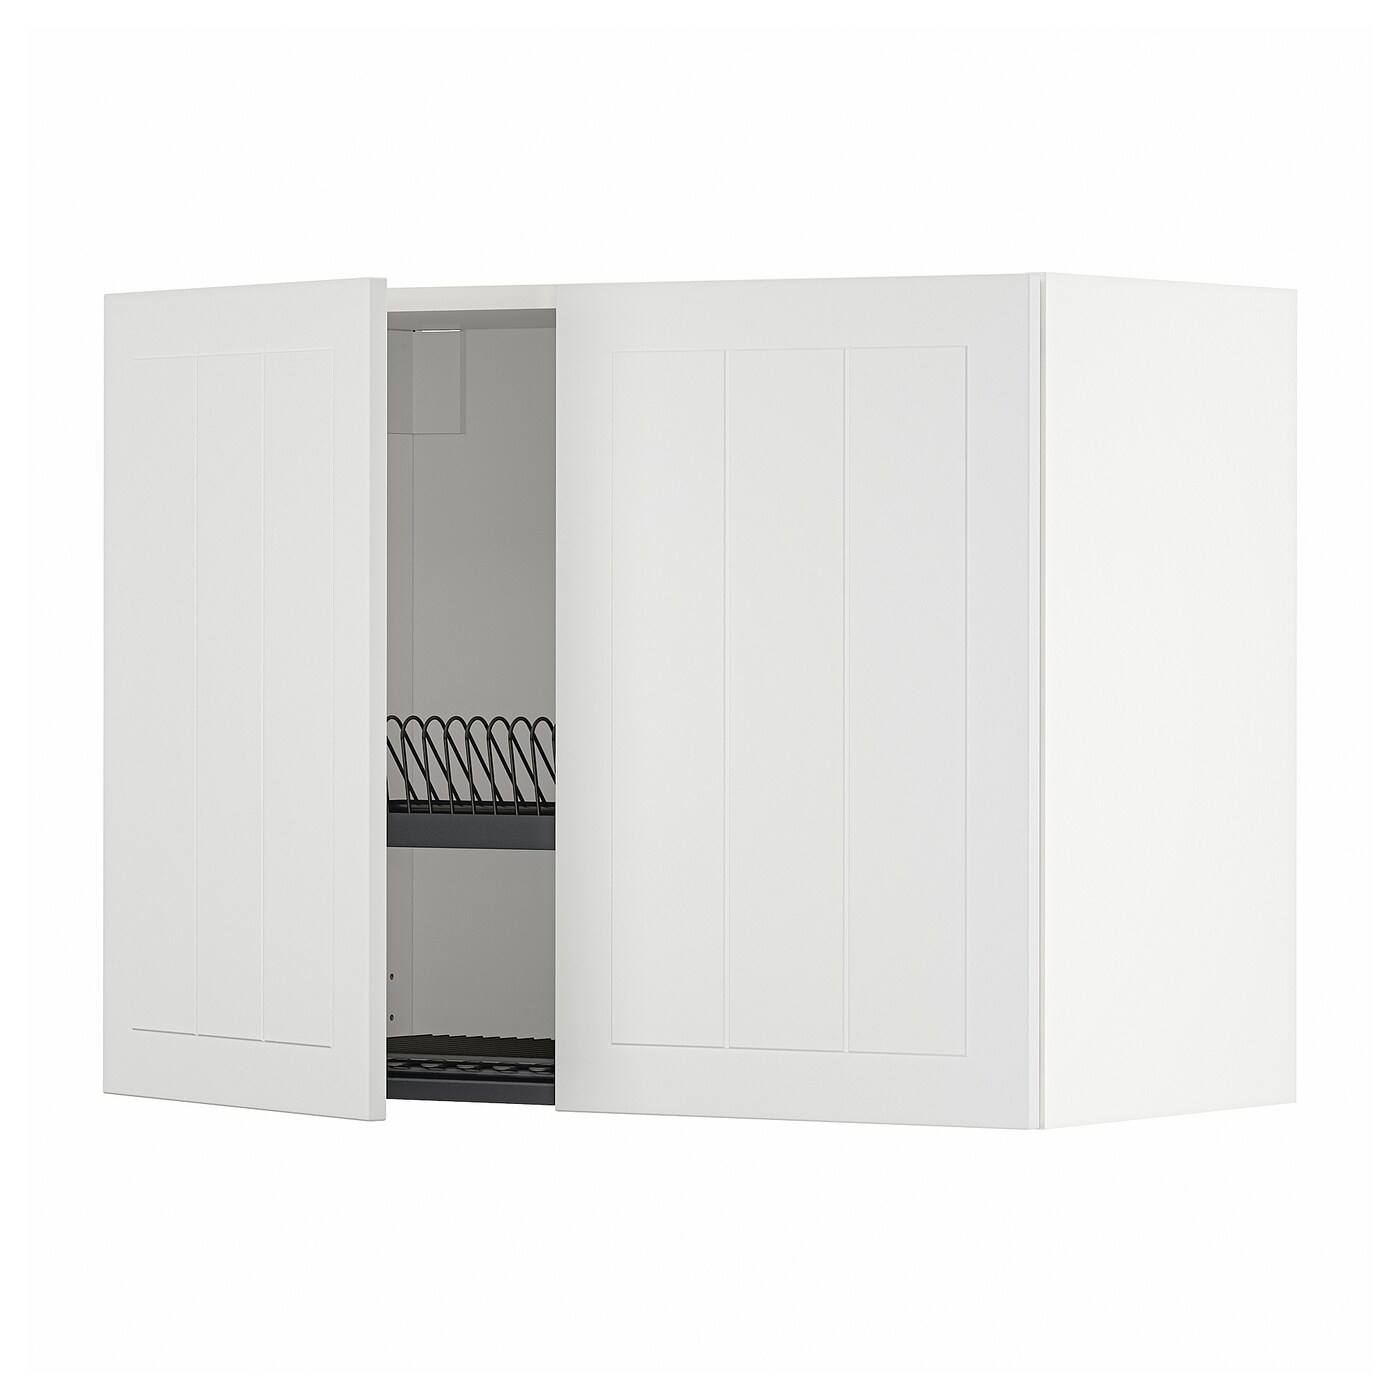 Навесной шкаф с сушилкой - METOD IKEA/ МЕТОД ИКЕА, 60х80 см, белый/светло-серый